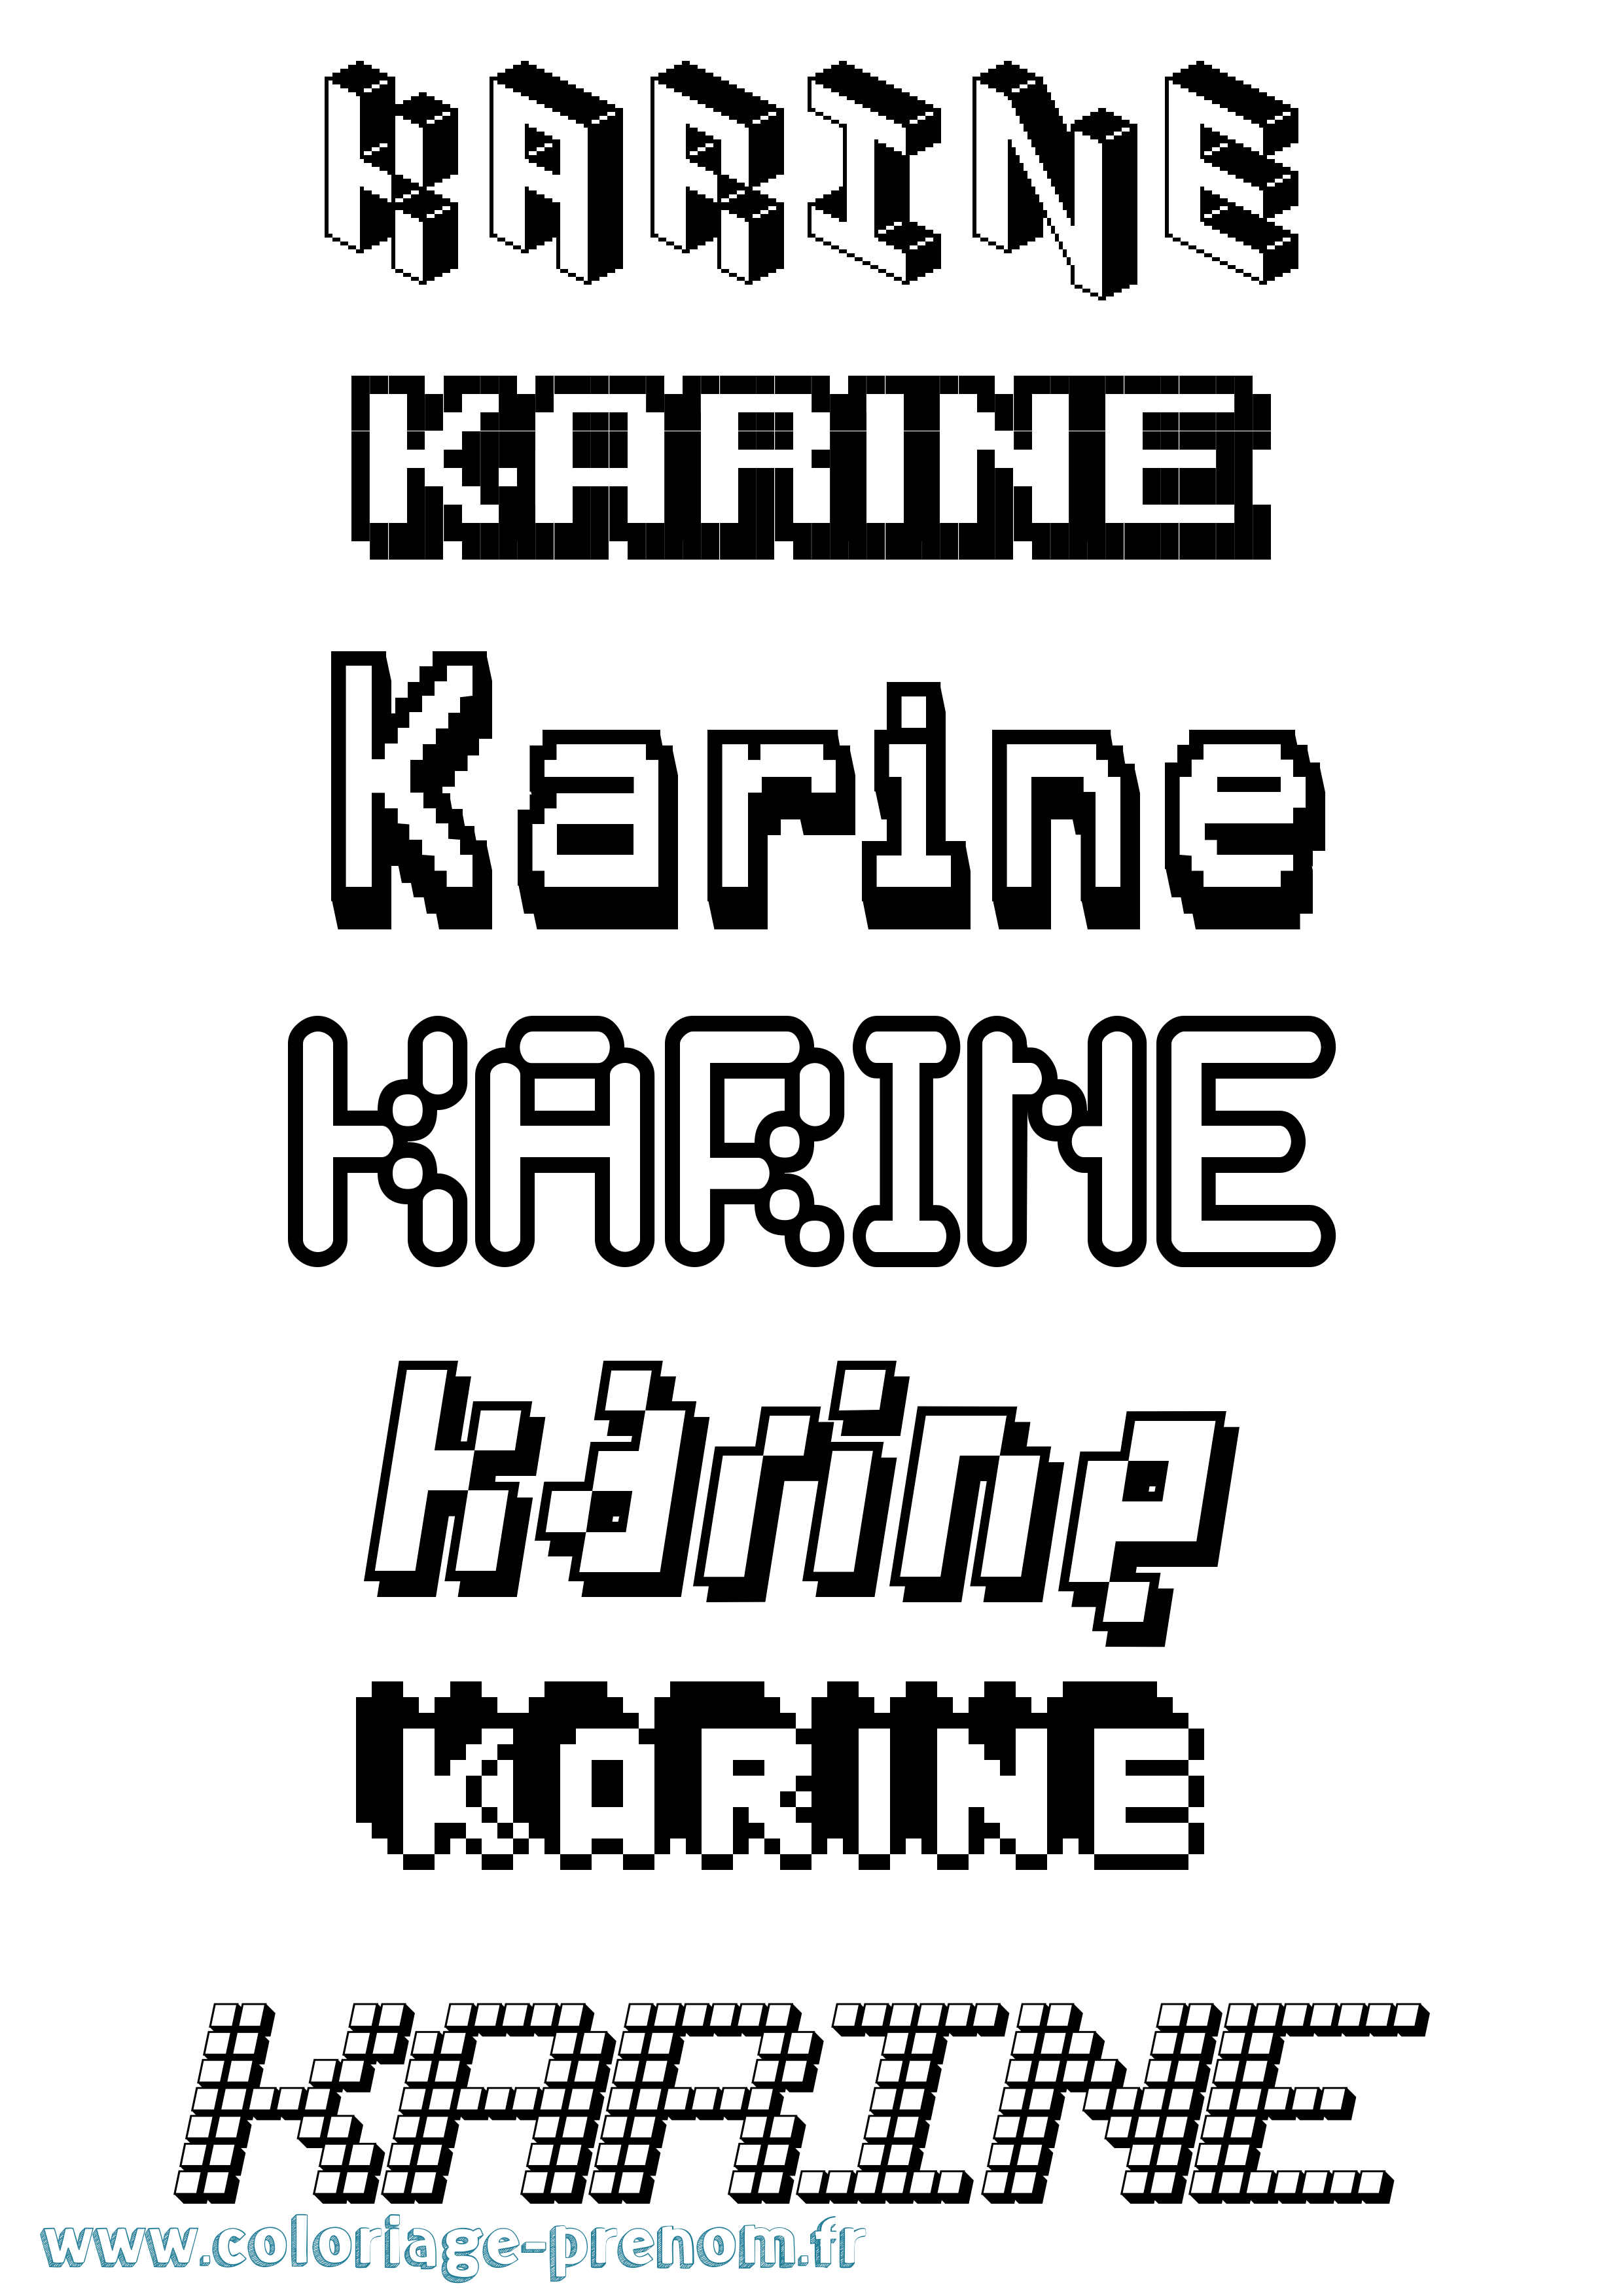 Coloriage prénom Karine Pixel